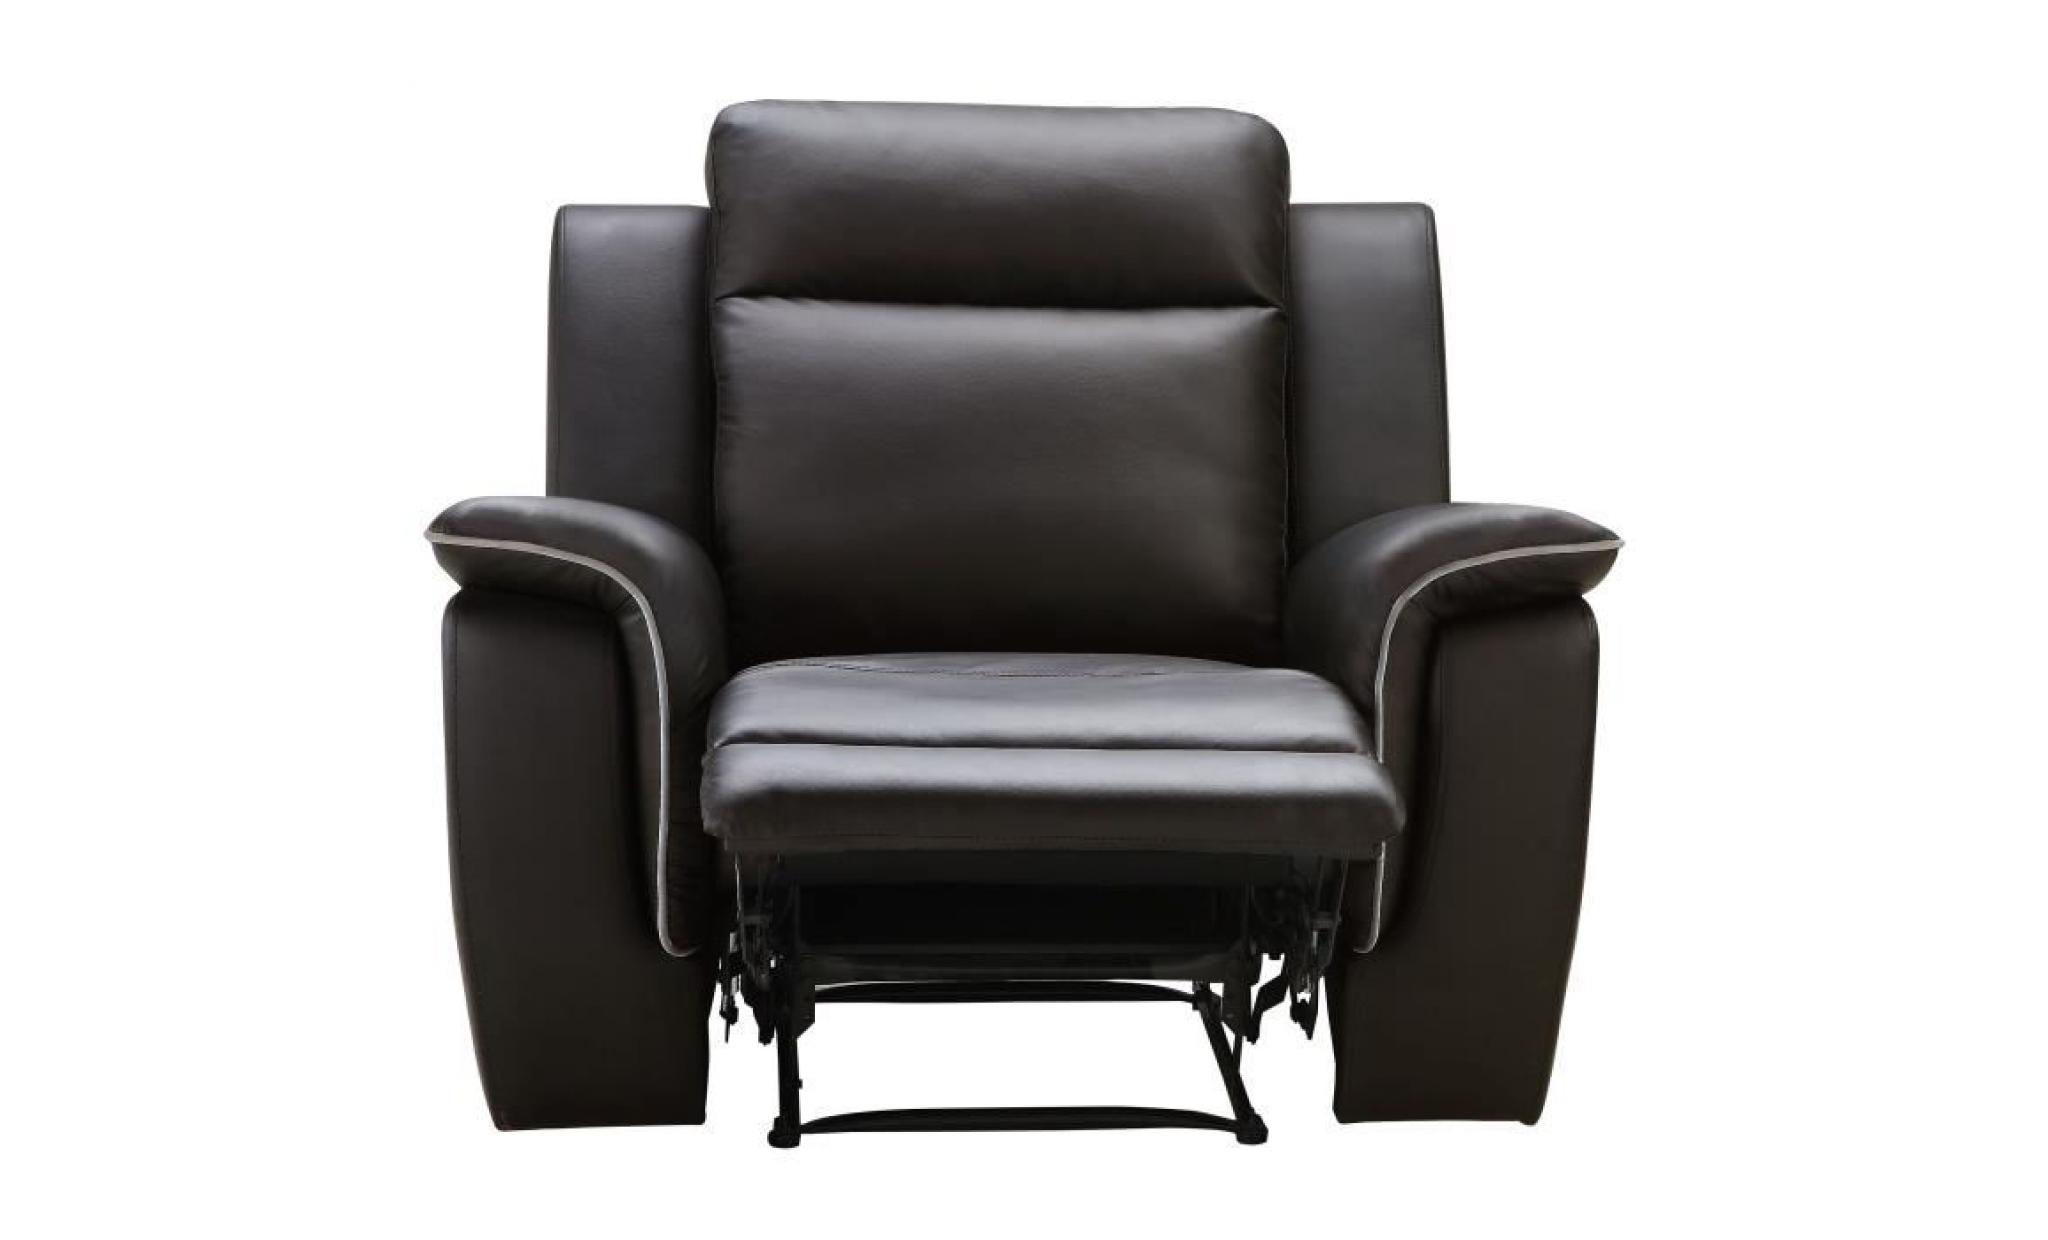 cocoon fauteuil de relaxation   simili marron   contemporain   l 108 x p 96 cm